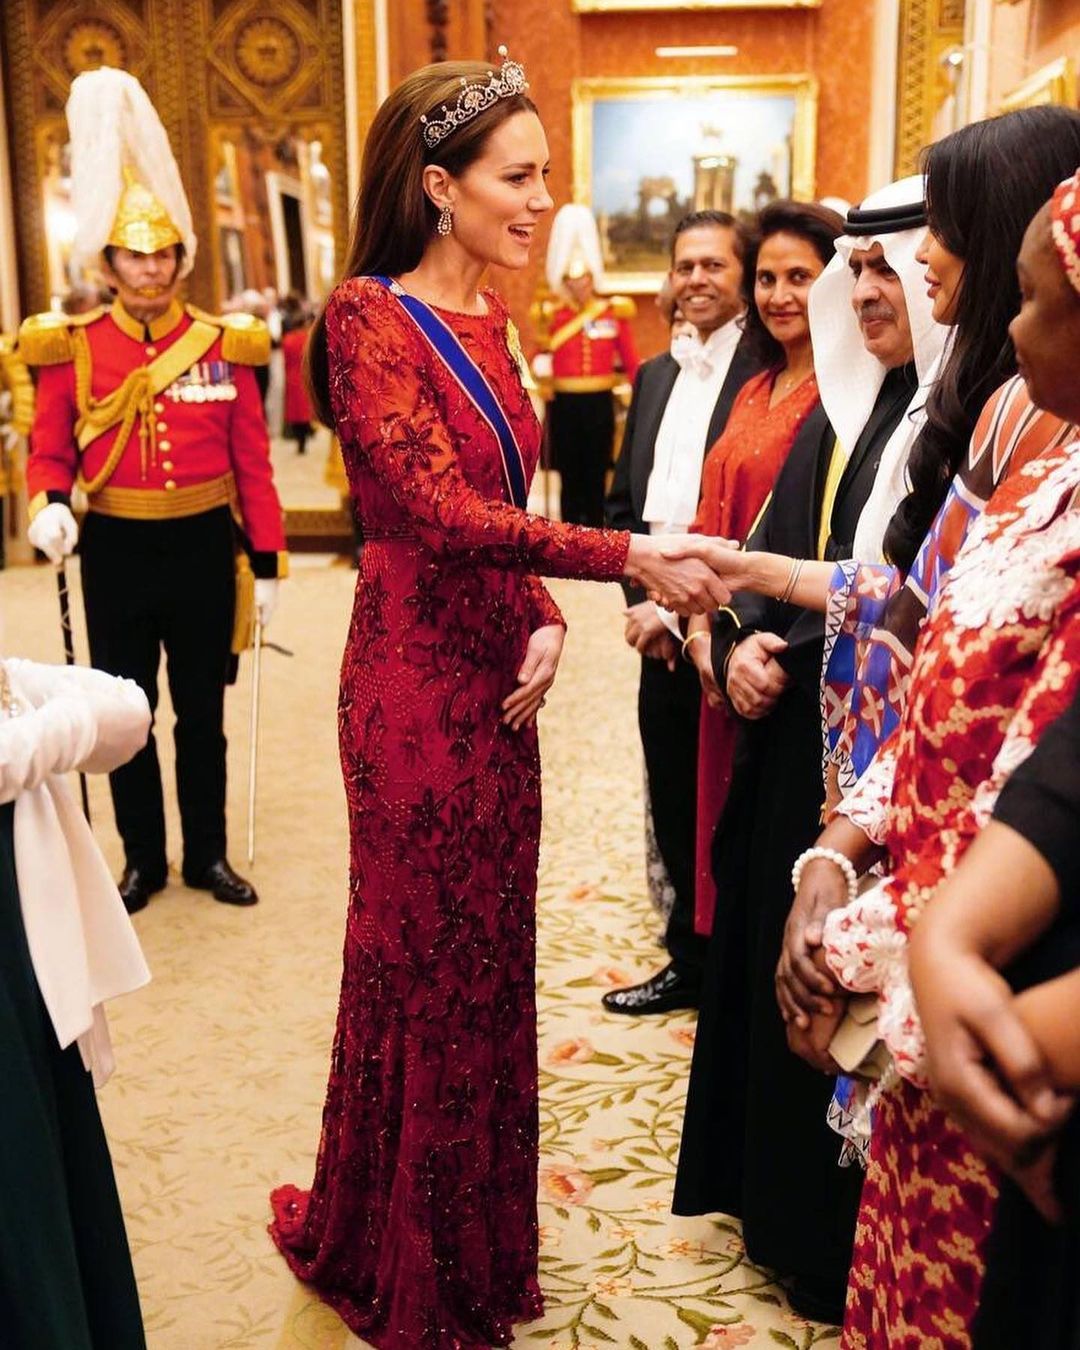 Современная принцесса: Кейт Миддлтон в тиаре и диамантах королевы провела прием в замке